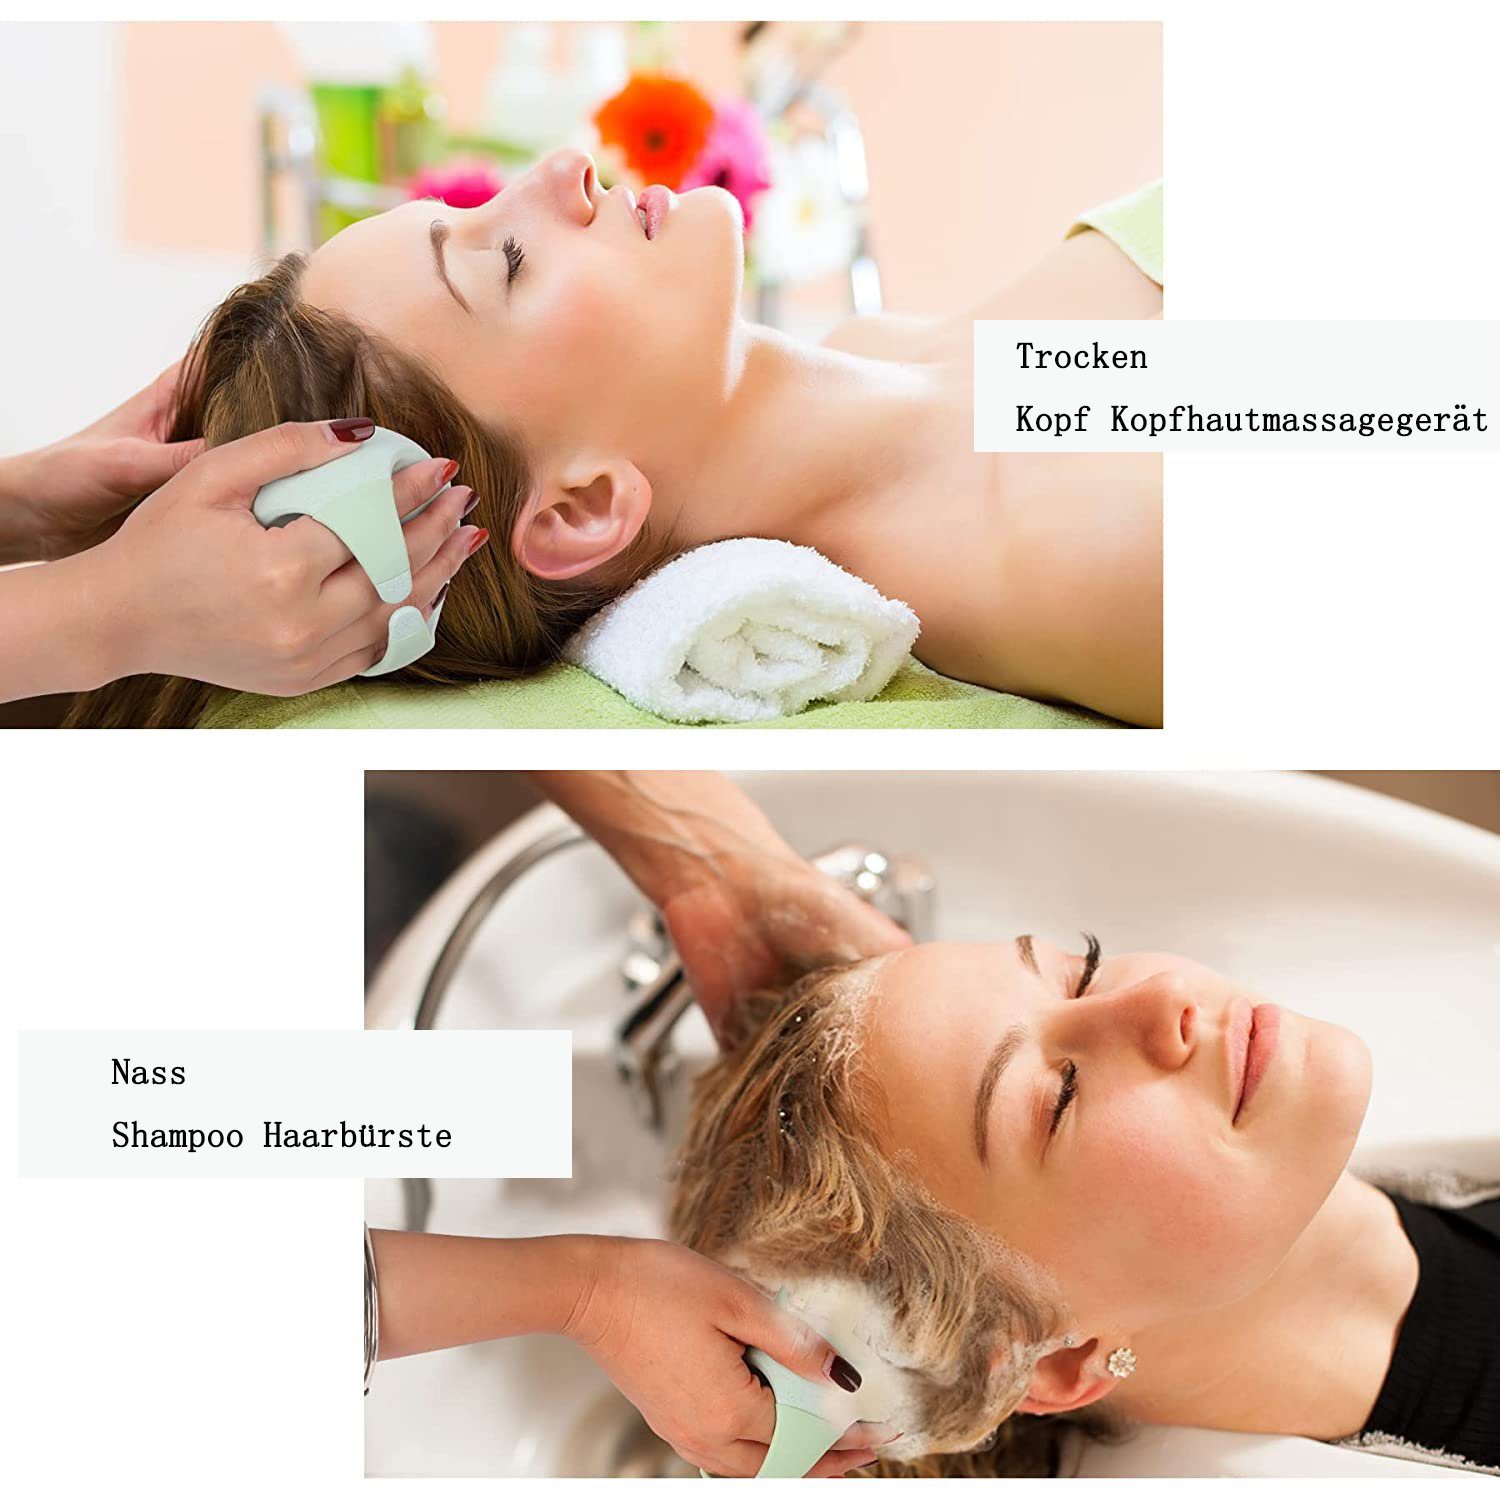 GelldG Haarbürste Kopfhaut Massagebürste Bürste, Shampoo Silikon Shampoo grün Haarbürste